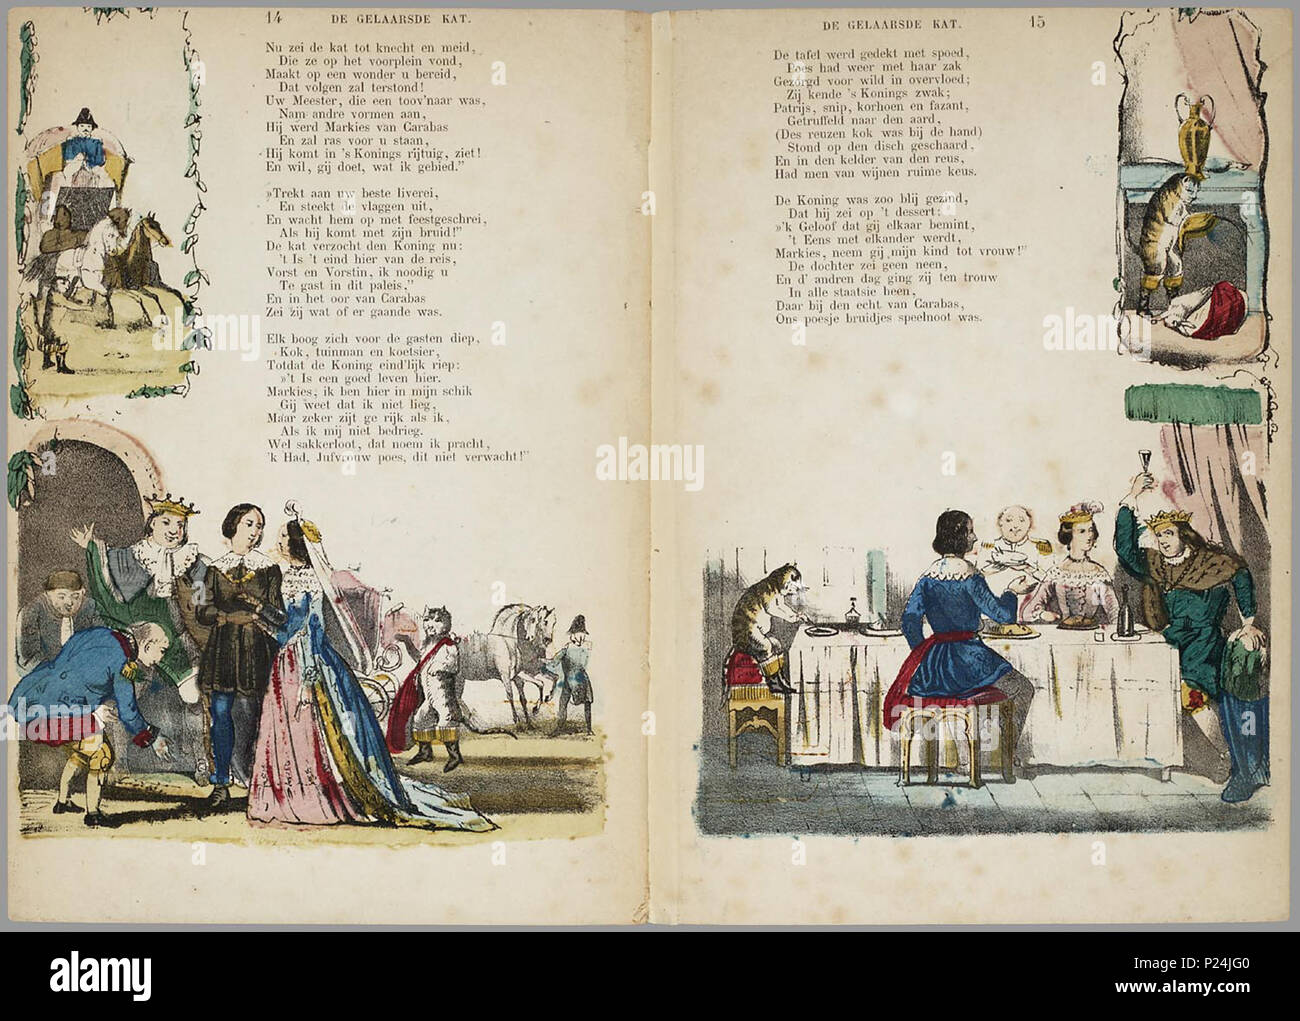 . De gelaarsde kat, of Hoe de marquis van Carabas een groot en rijk heer werd / door A. van der Hoop Jr.'s Zn. ; naar Charles Perrault.  Bewerking van het sprookje met afbeeldingen in zwart op de voorkant, en twee handgekleurde illustraties per blad, rondom de klein gedrukte rijmende tekst. // 3e dr. 8 bl : handgekl. lith // Datering: 3e dr. niet in Brinkman, 6e druk 1875, schatting tussen 1856 en 1875 // 1e uitg.: 1856 Prentenboeken // Sprookjes // Rijmvertellingen . A. van der Hoop Jr.'s zoon // Charles Perrault  PRB01 86390288X 006, 22-03-2006, 13:10,  8C, 3740x2804 (2687+2846), 100%%%%, Pr Stock Photo